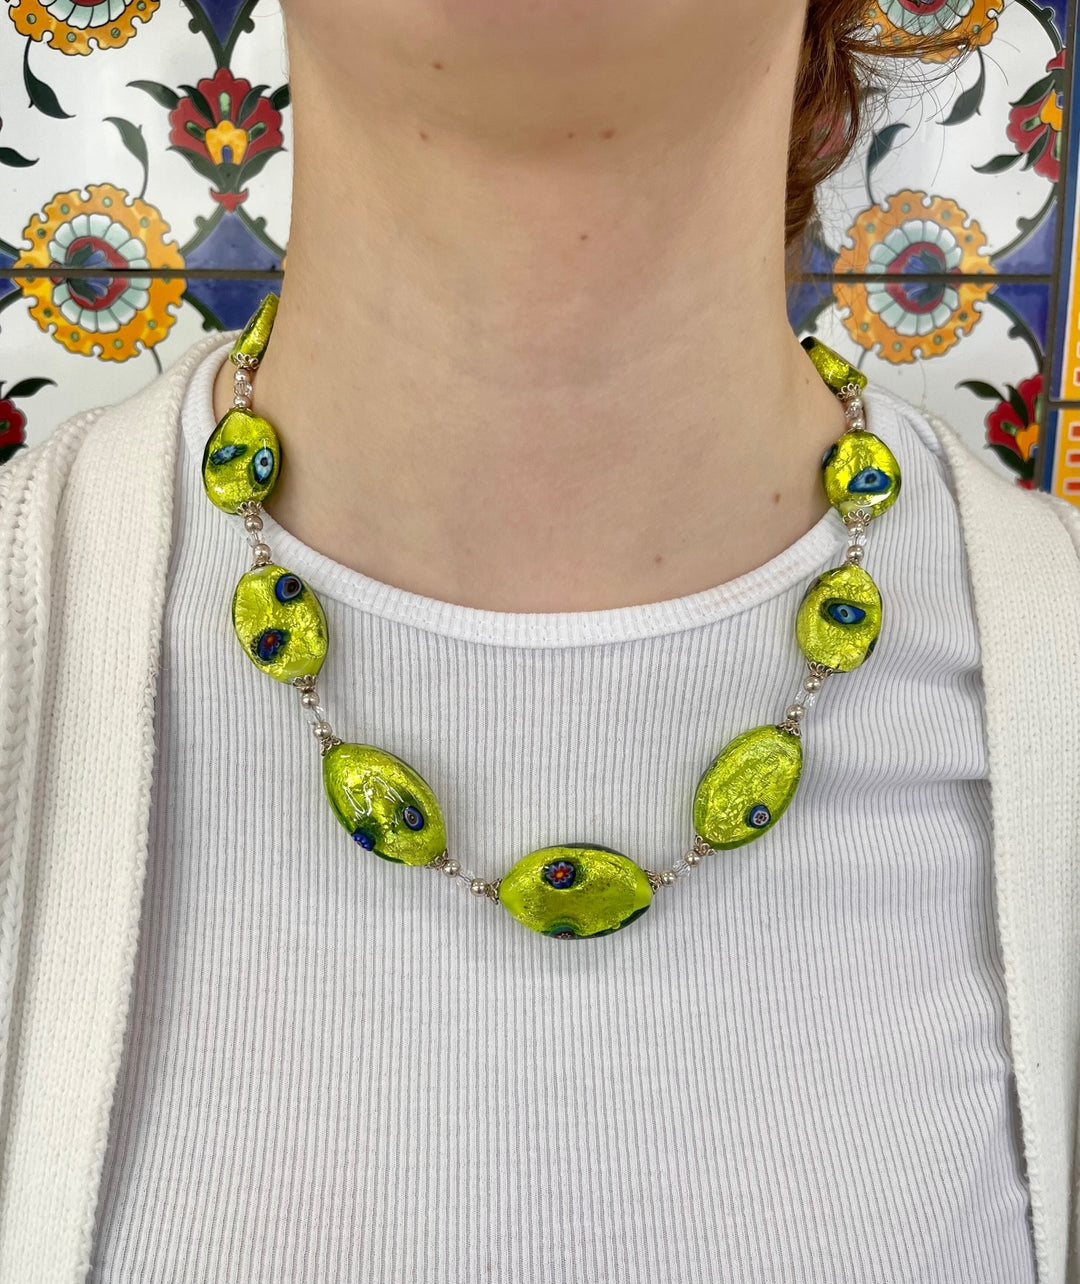 Contemporary Venetian foil necklace